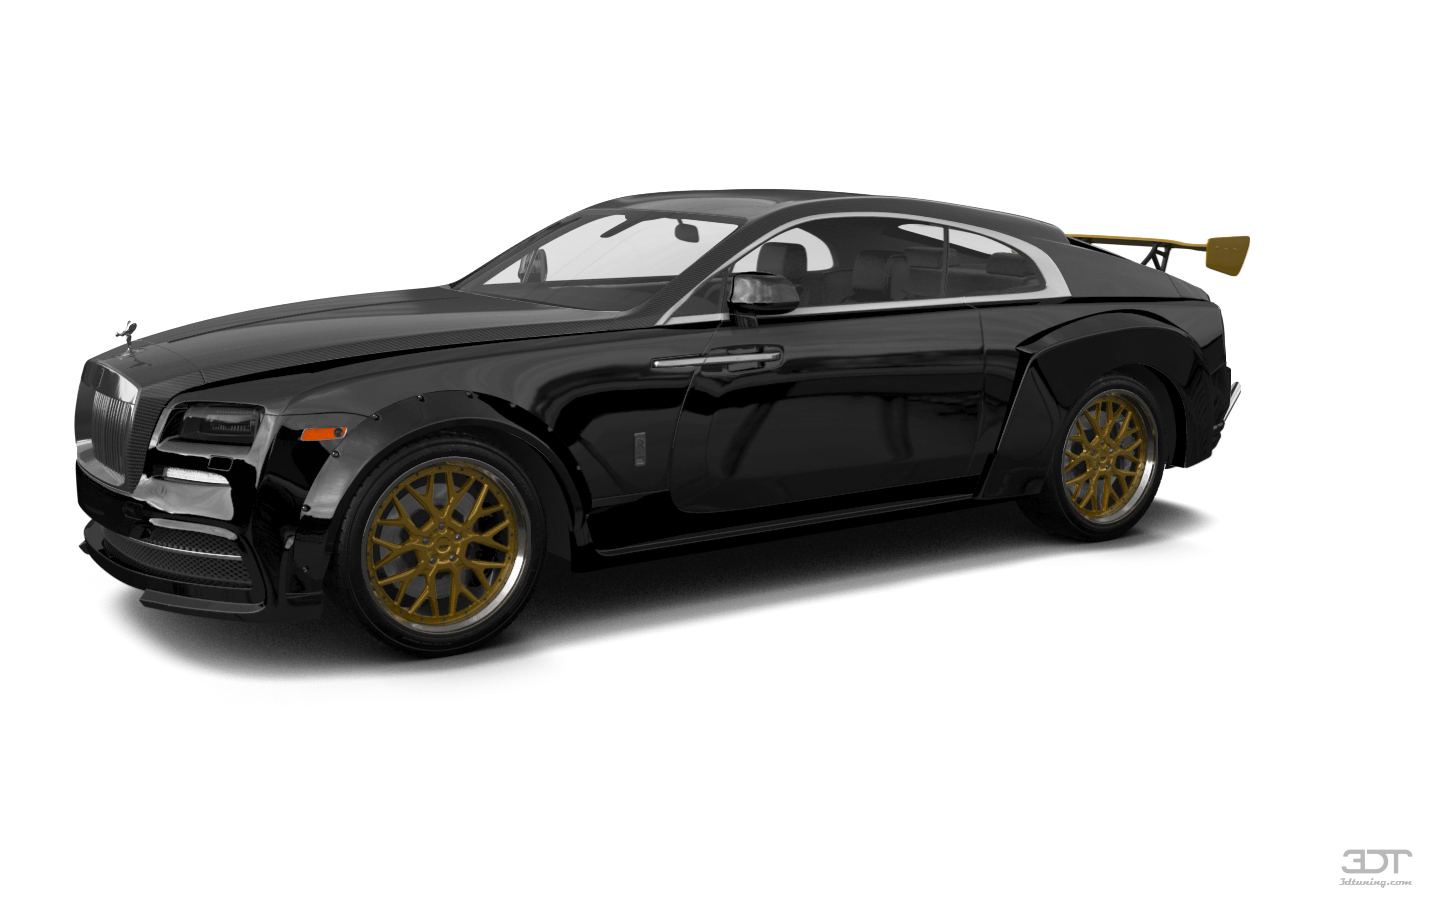 Rolls Royce Wraith 2 Door Coupe 2014